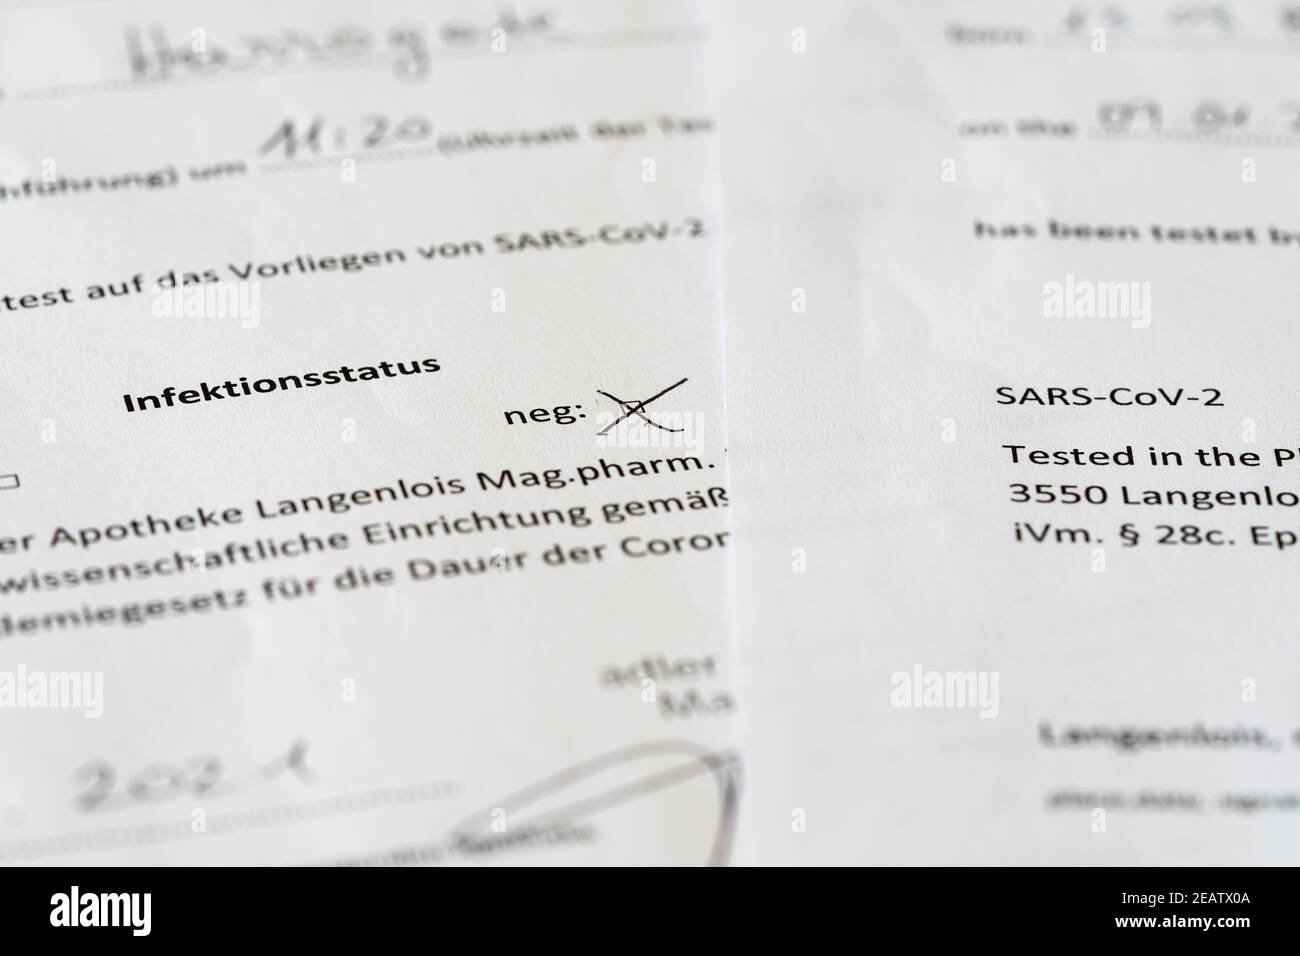 Un test Covid-19 négatif est requis pour l'entrée dans le Royaume-Uni pendant le verrouillage - voici deux certificats de test négatifs De l'Autriche en anglais et en allemand Banque D'Images